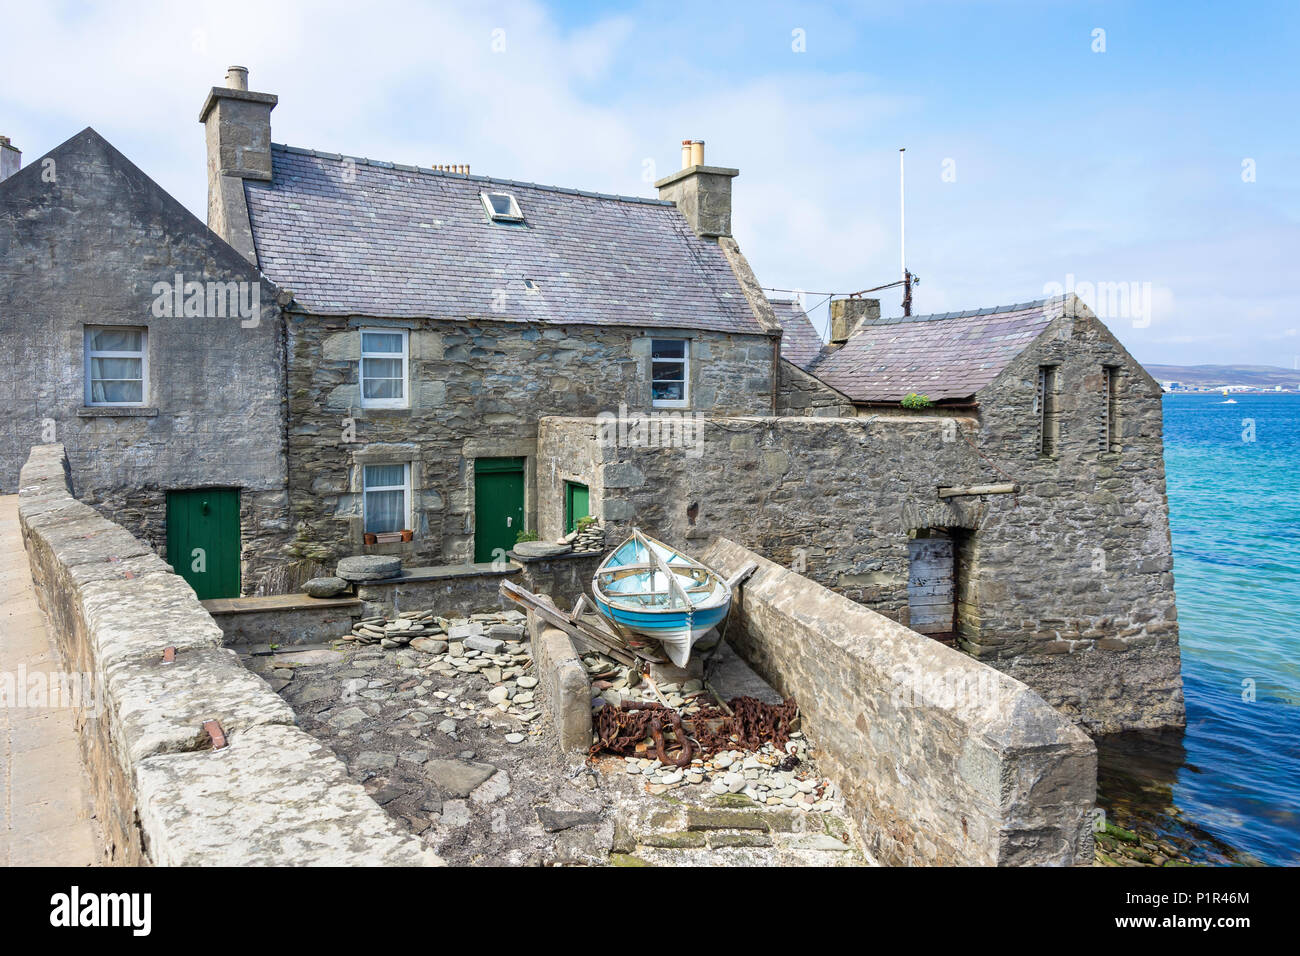 Maison en pierre dans la région de Harbour (Jimmy Perez house dans la série TV), Shetland Lerwick, Shetland, îles du Nord, Ecosse, Royaume-Uni Banque D'Images